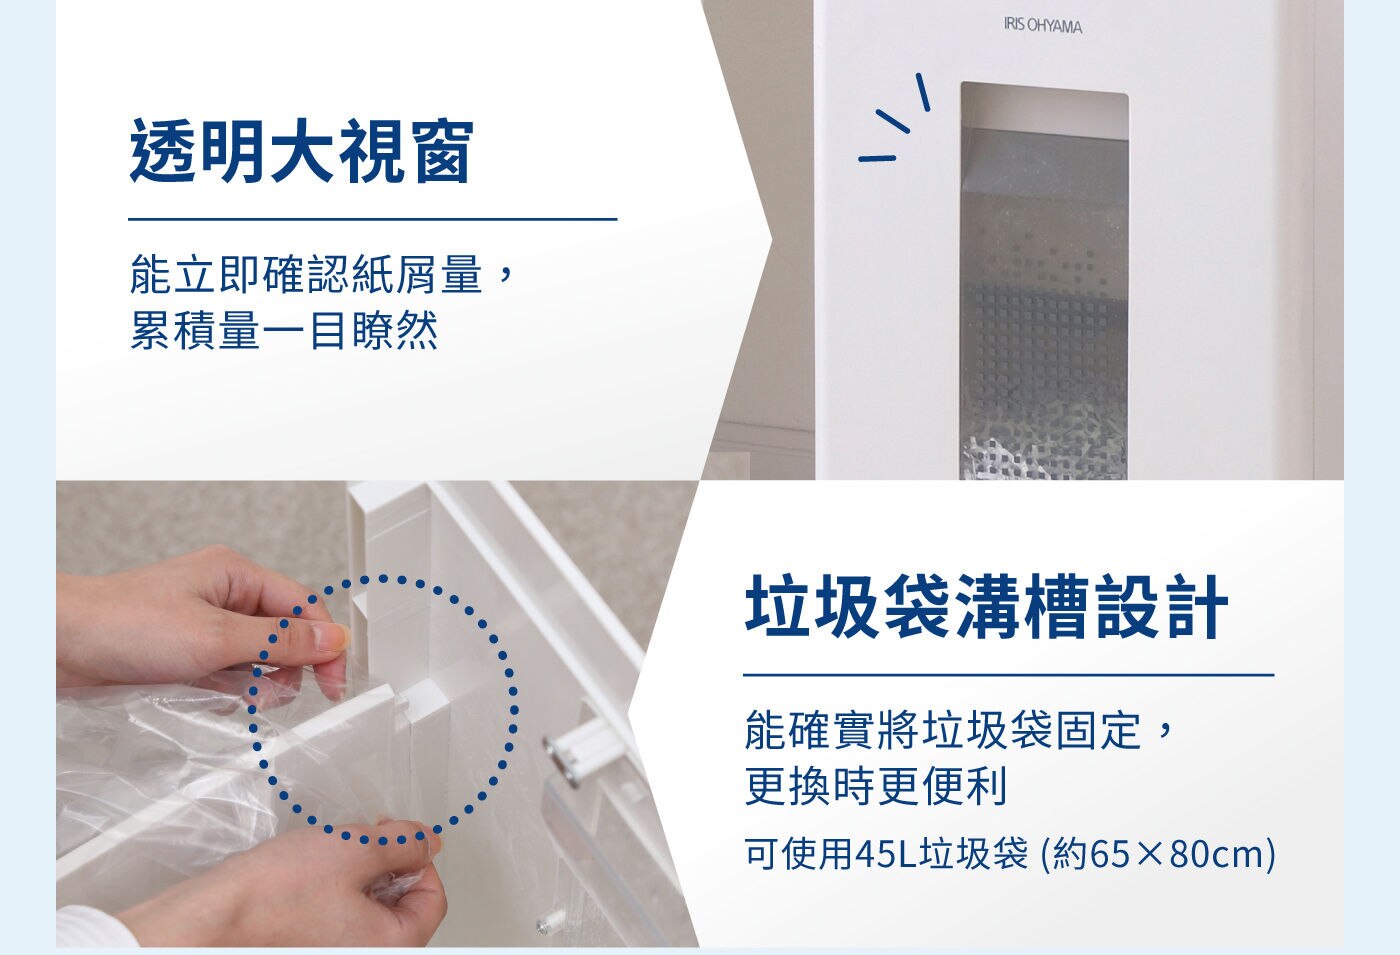 IRIS OHYAMA 30公升事務型碎紙機透明大視窗能立即確認紙屑量累積量一目了然/垃圾袋溝槽設計確實將垃圾袋固定更換更便利